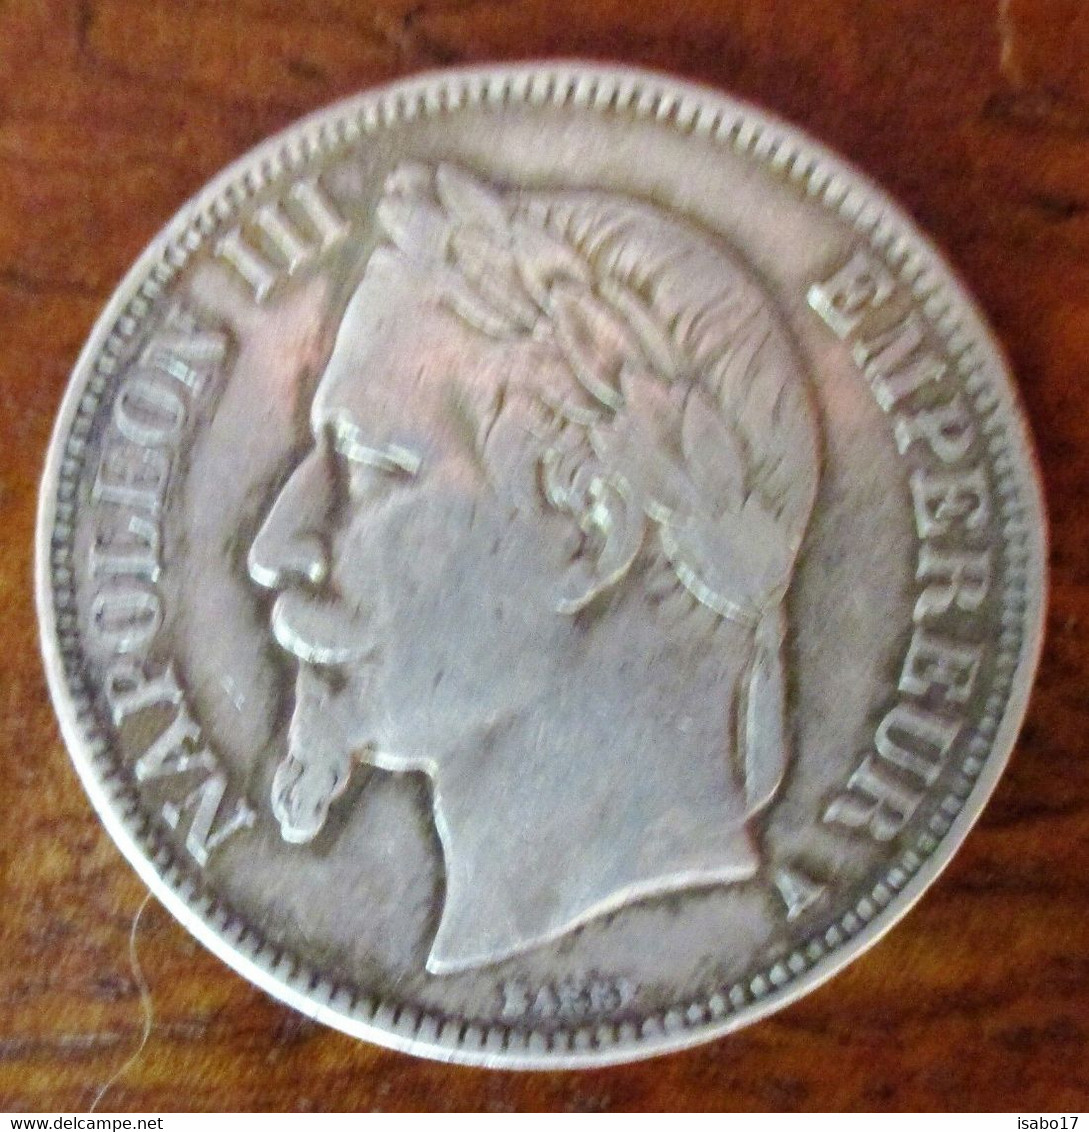 5 Francs - Napoleon III - France 1868 - 5 Francs